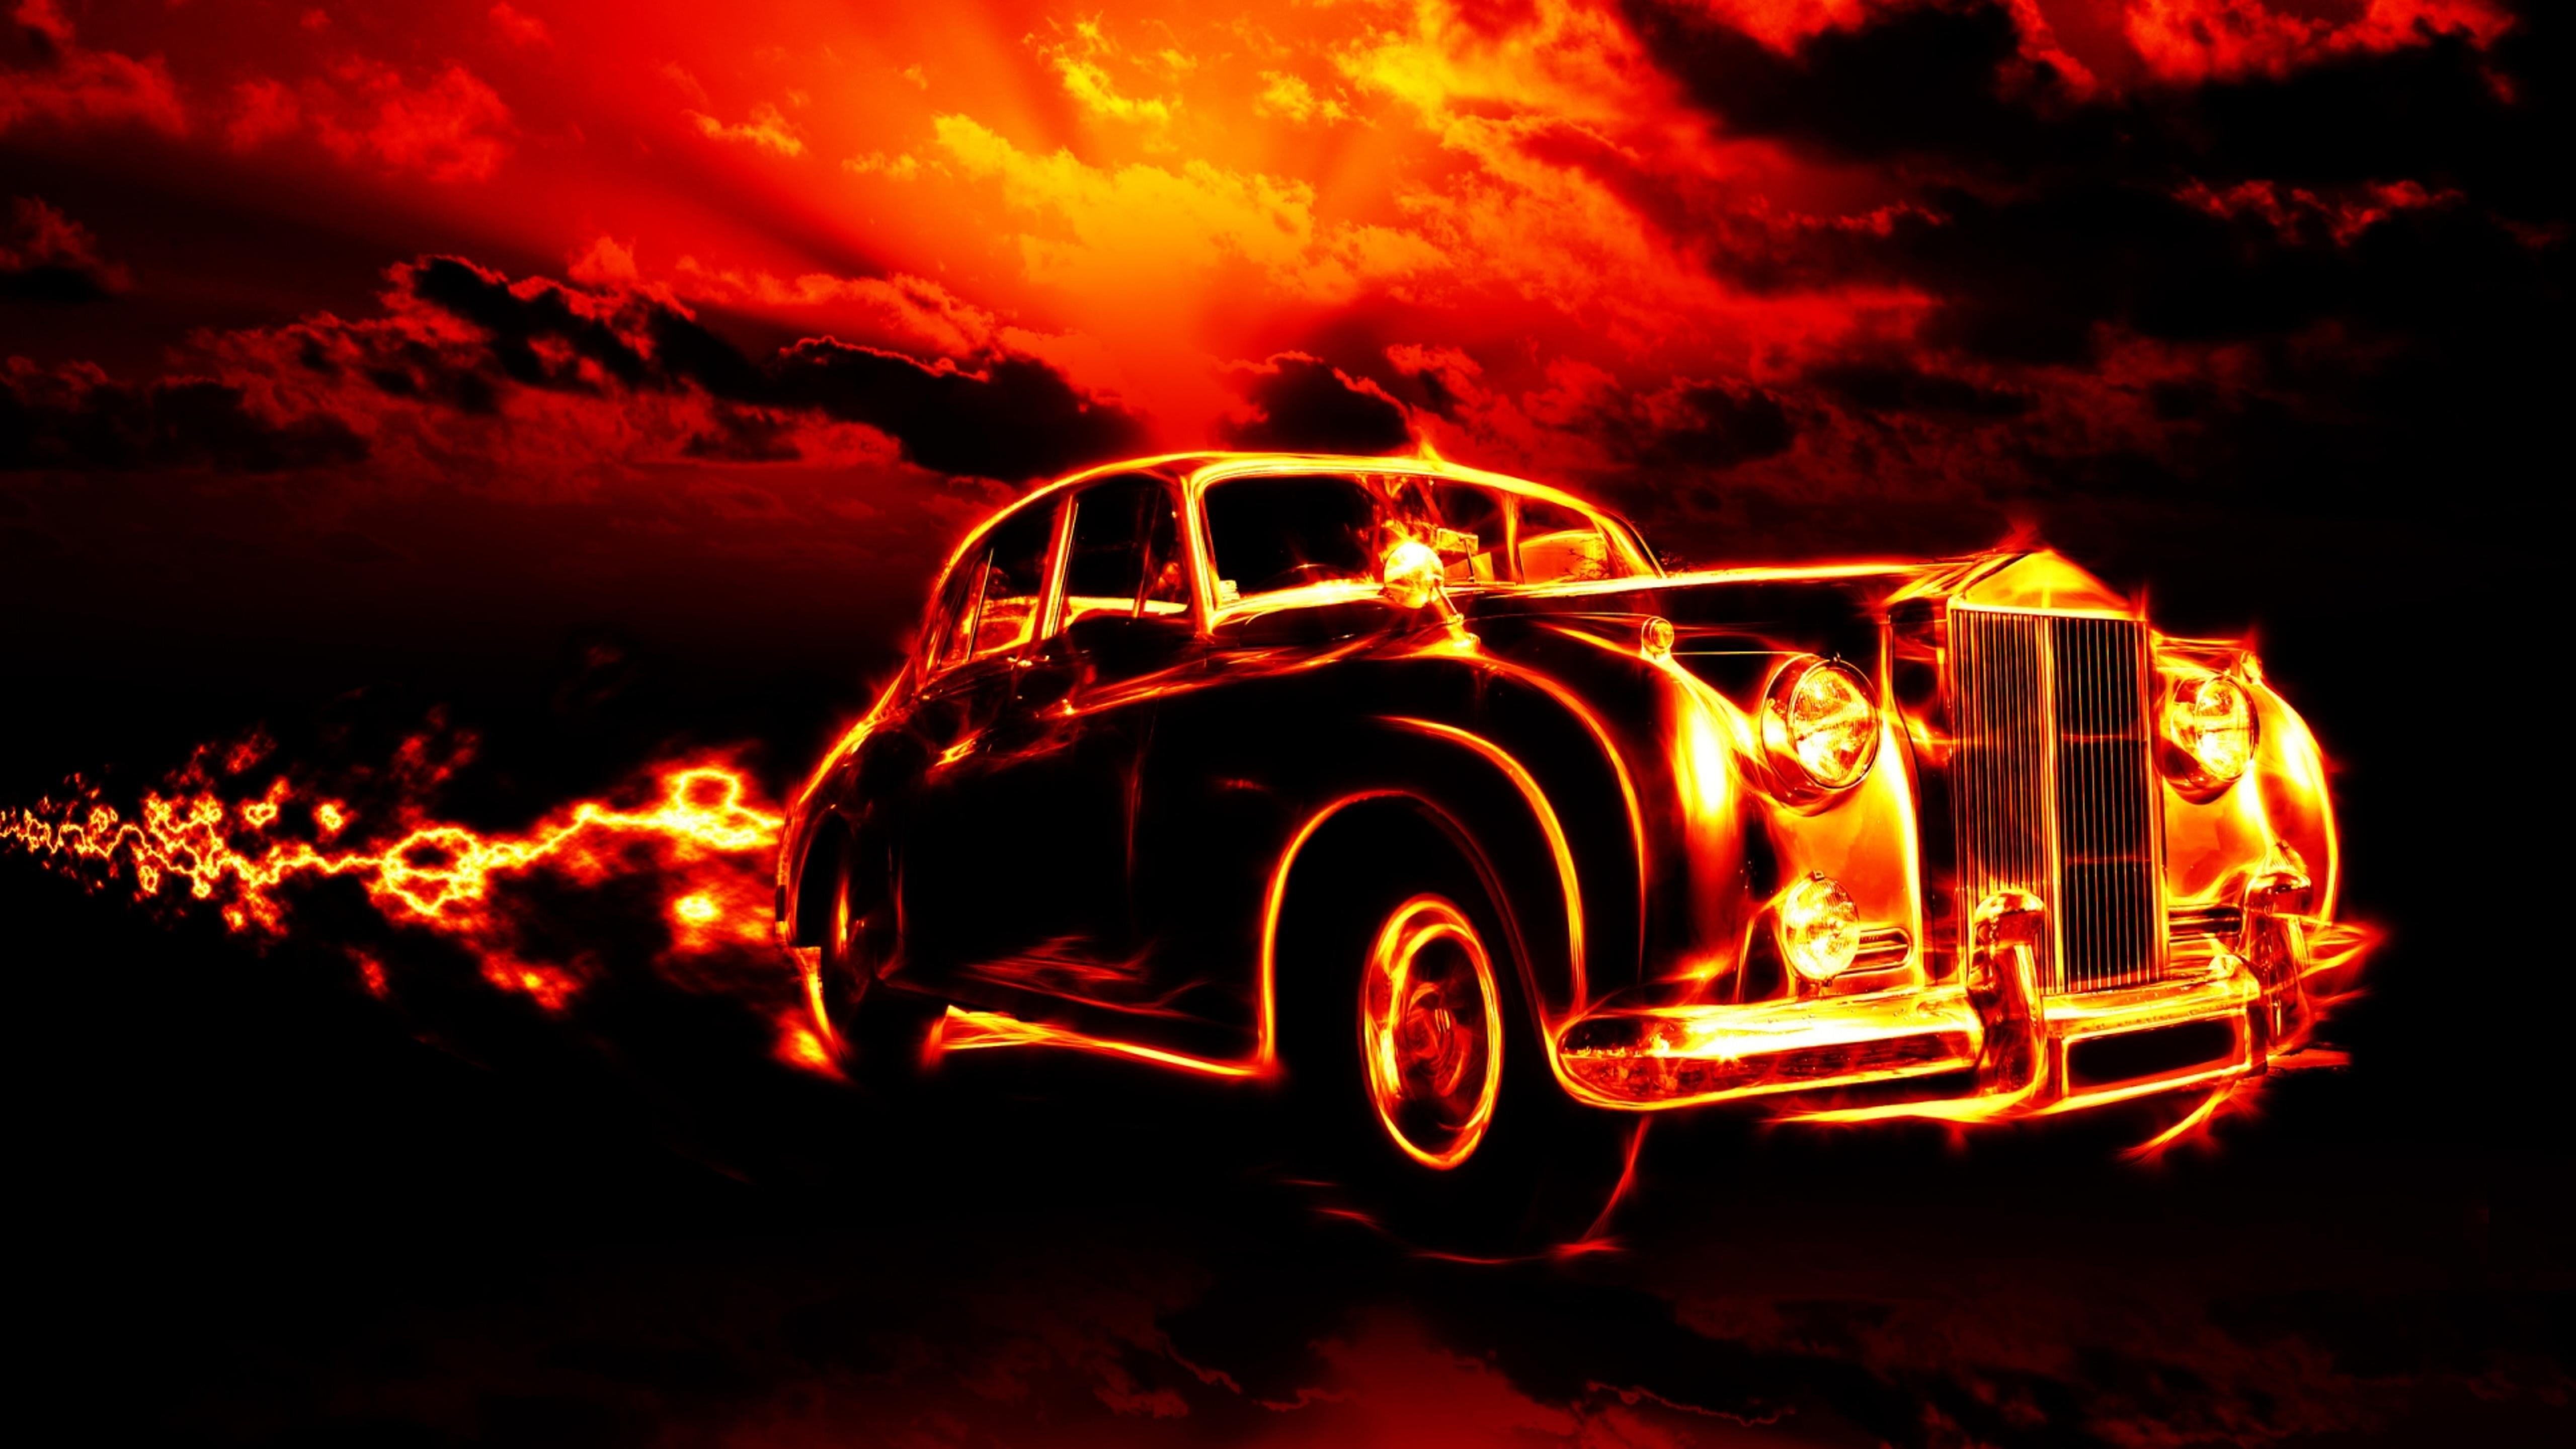 Vintage car in flames